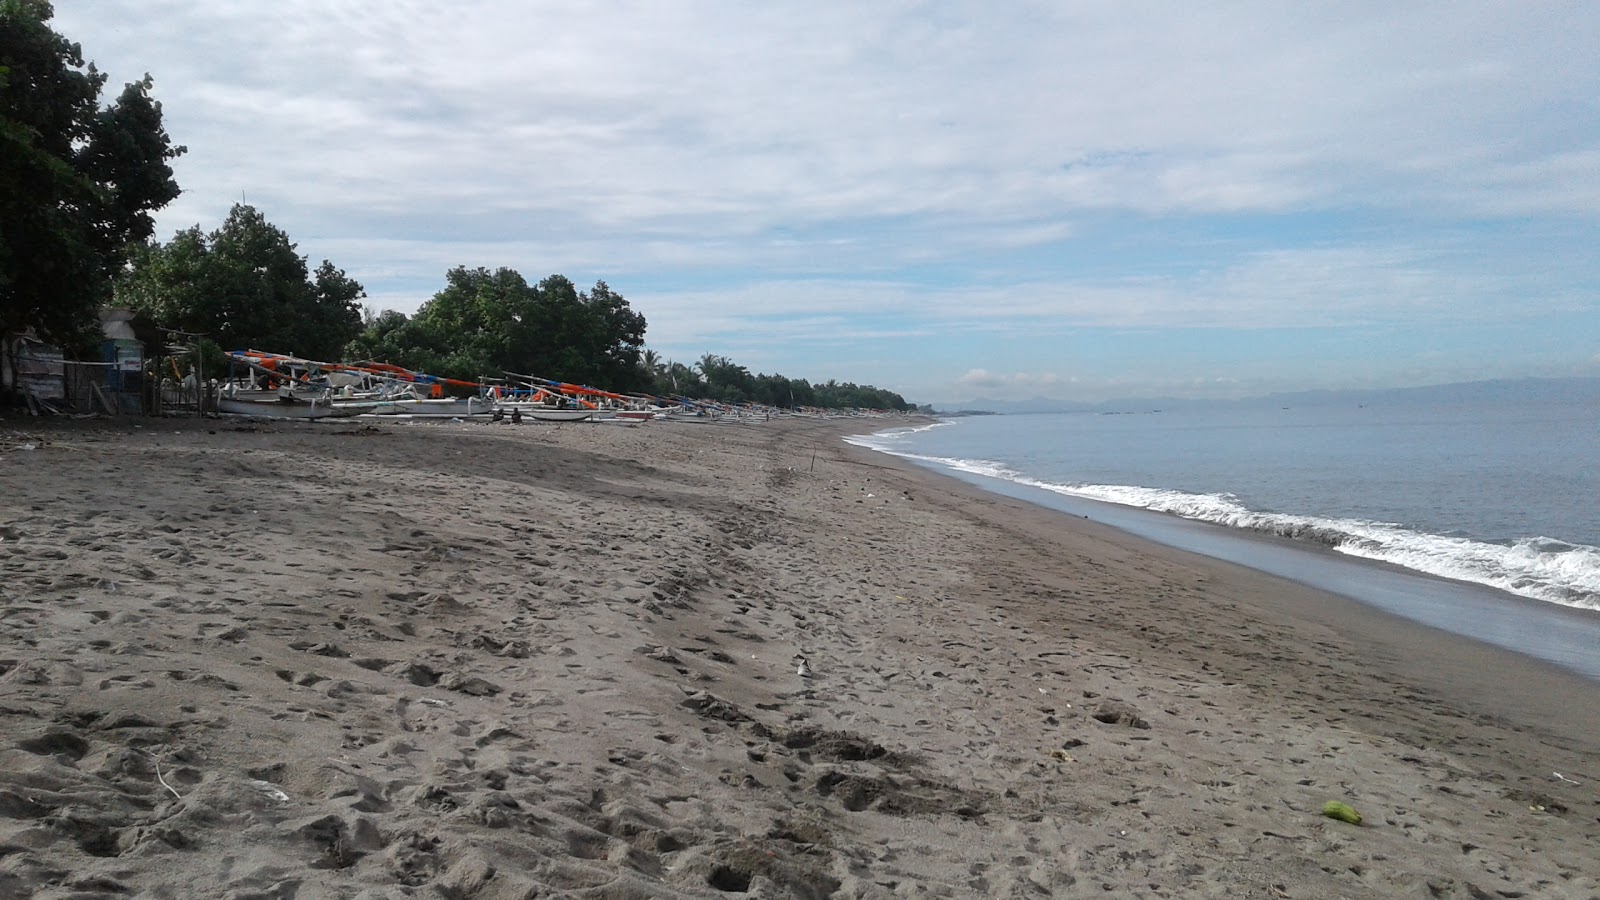 Zdjęcie Montong Beach z powierzchnią brązowy piasek